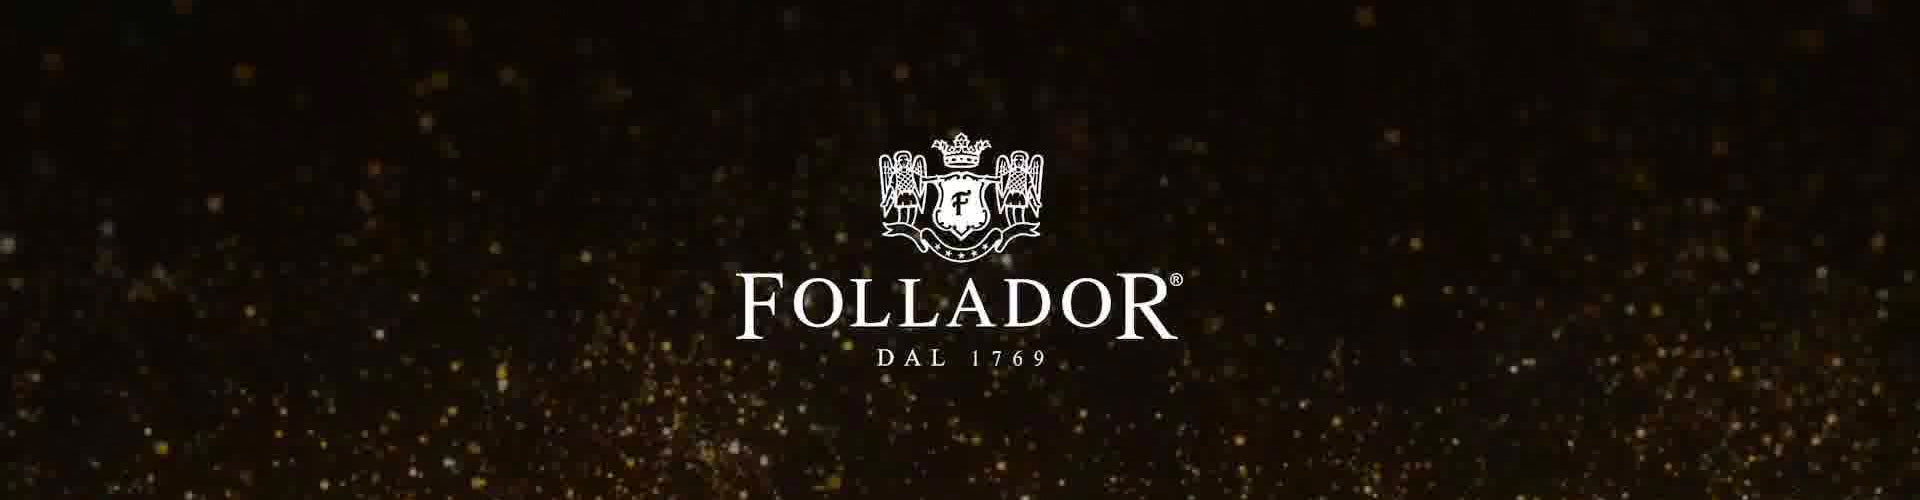 Follador Prosecco Collection Logo